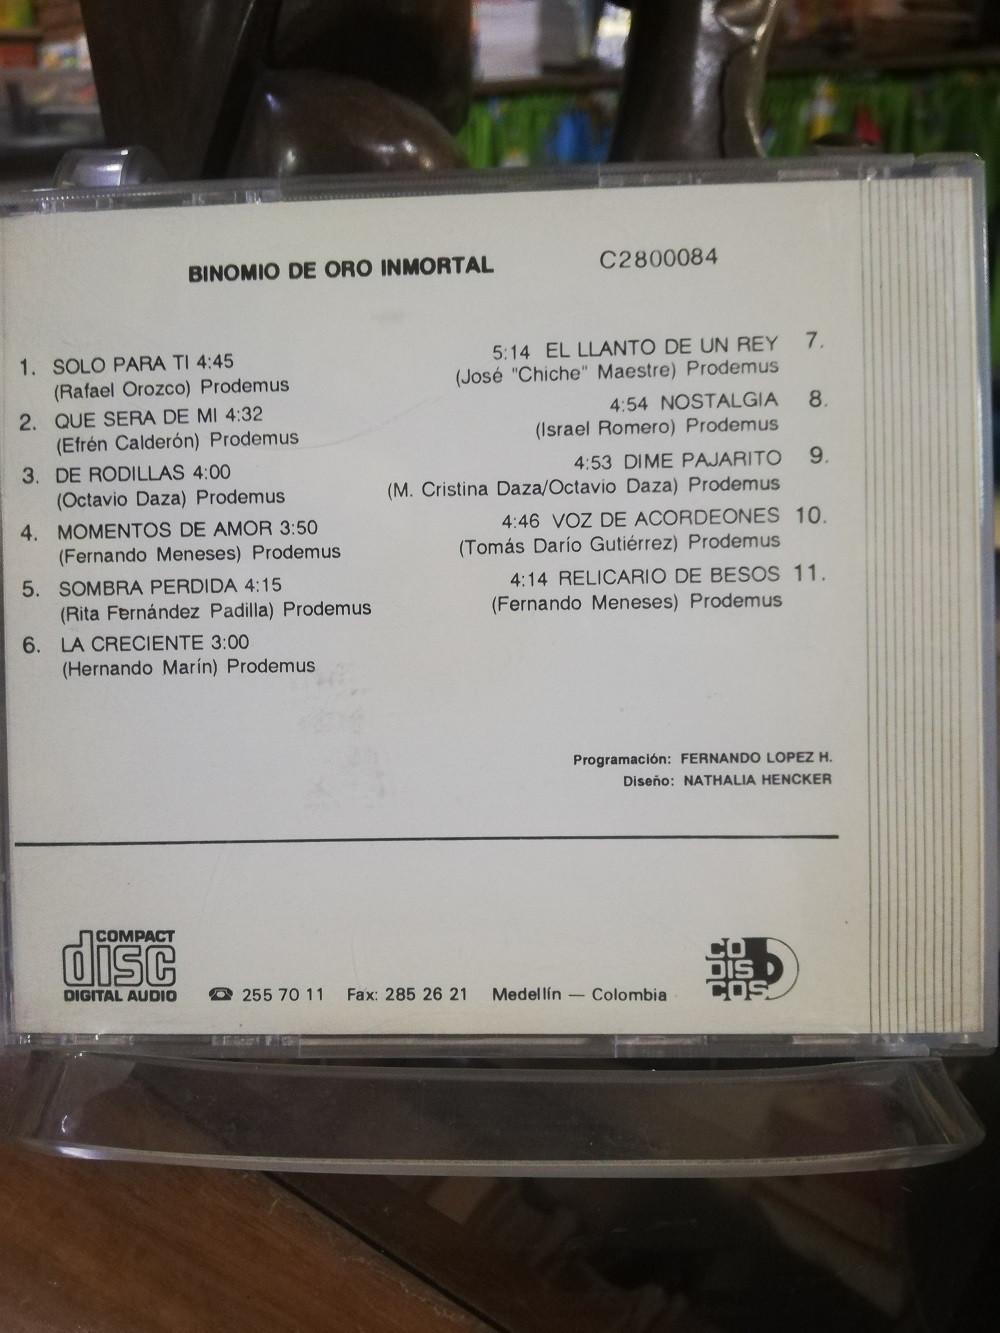 Imagen CD BINOMIO DE ORO - INMORTAL 2